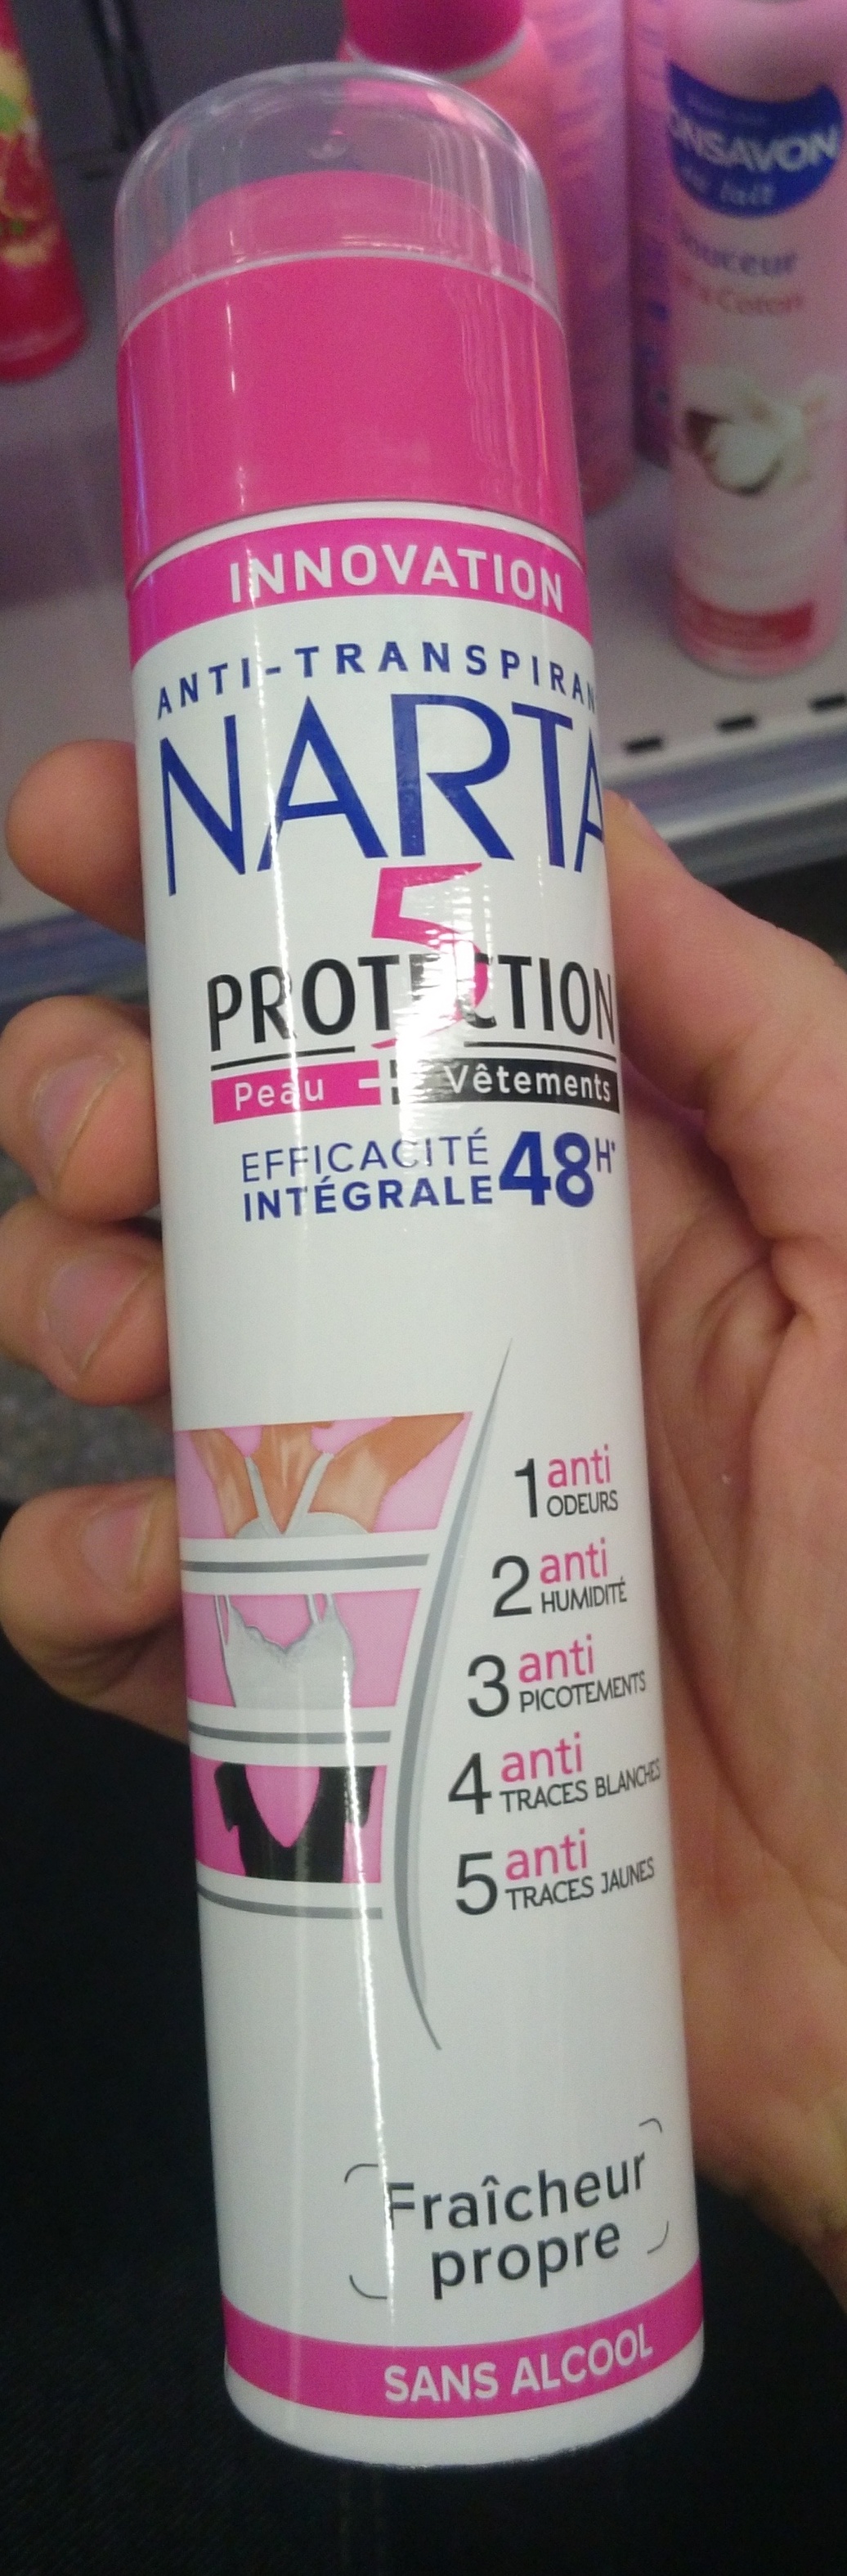 5 protections efficacité intégrale 48h - Produkt - fr